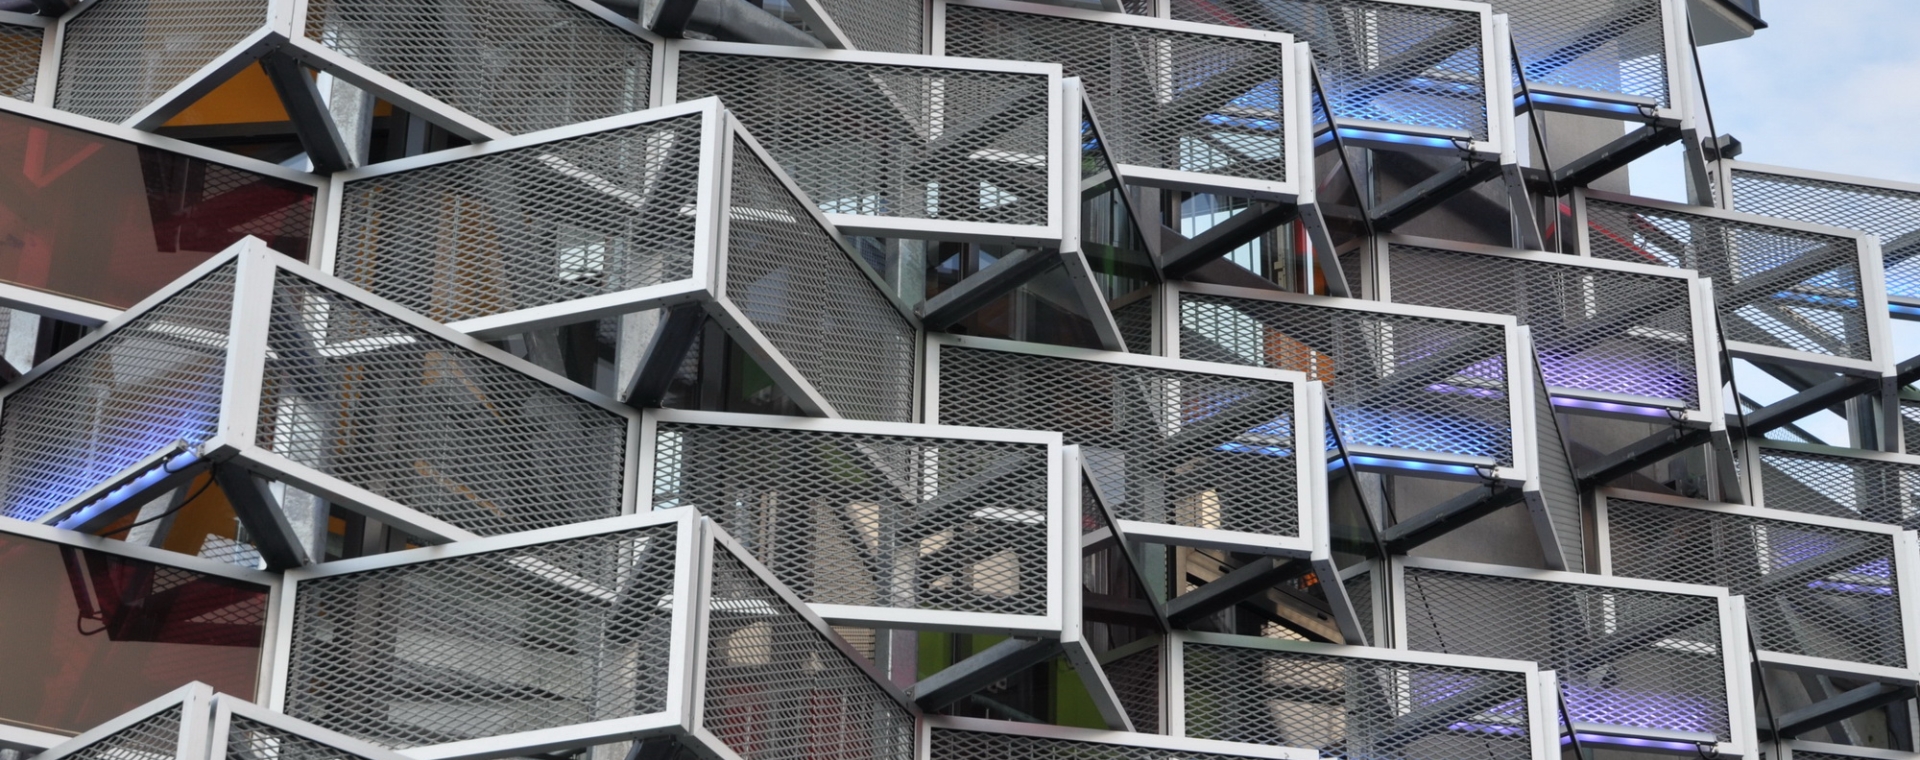 建筑裝飾孔鋼板網安裝在建筑外墻。